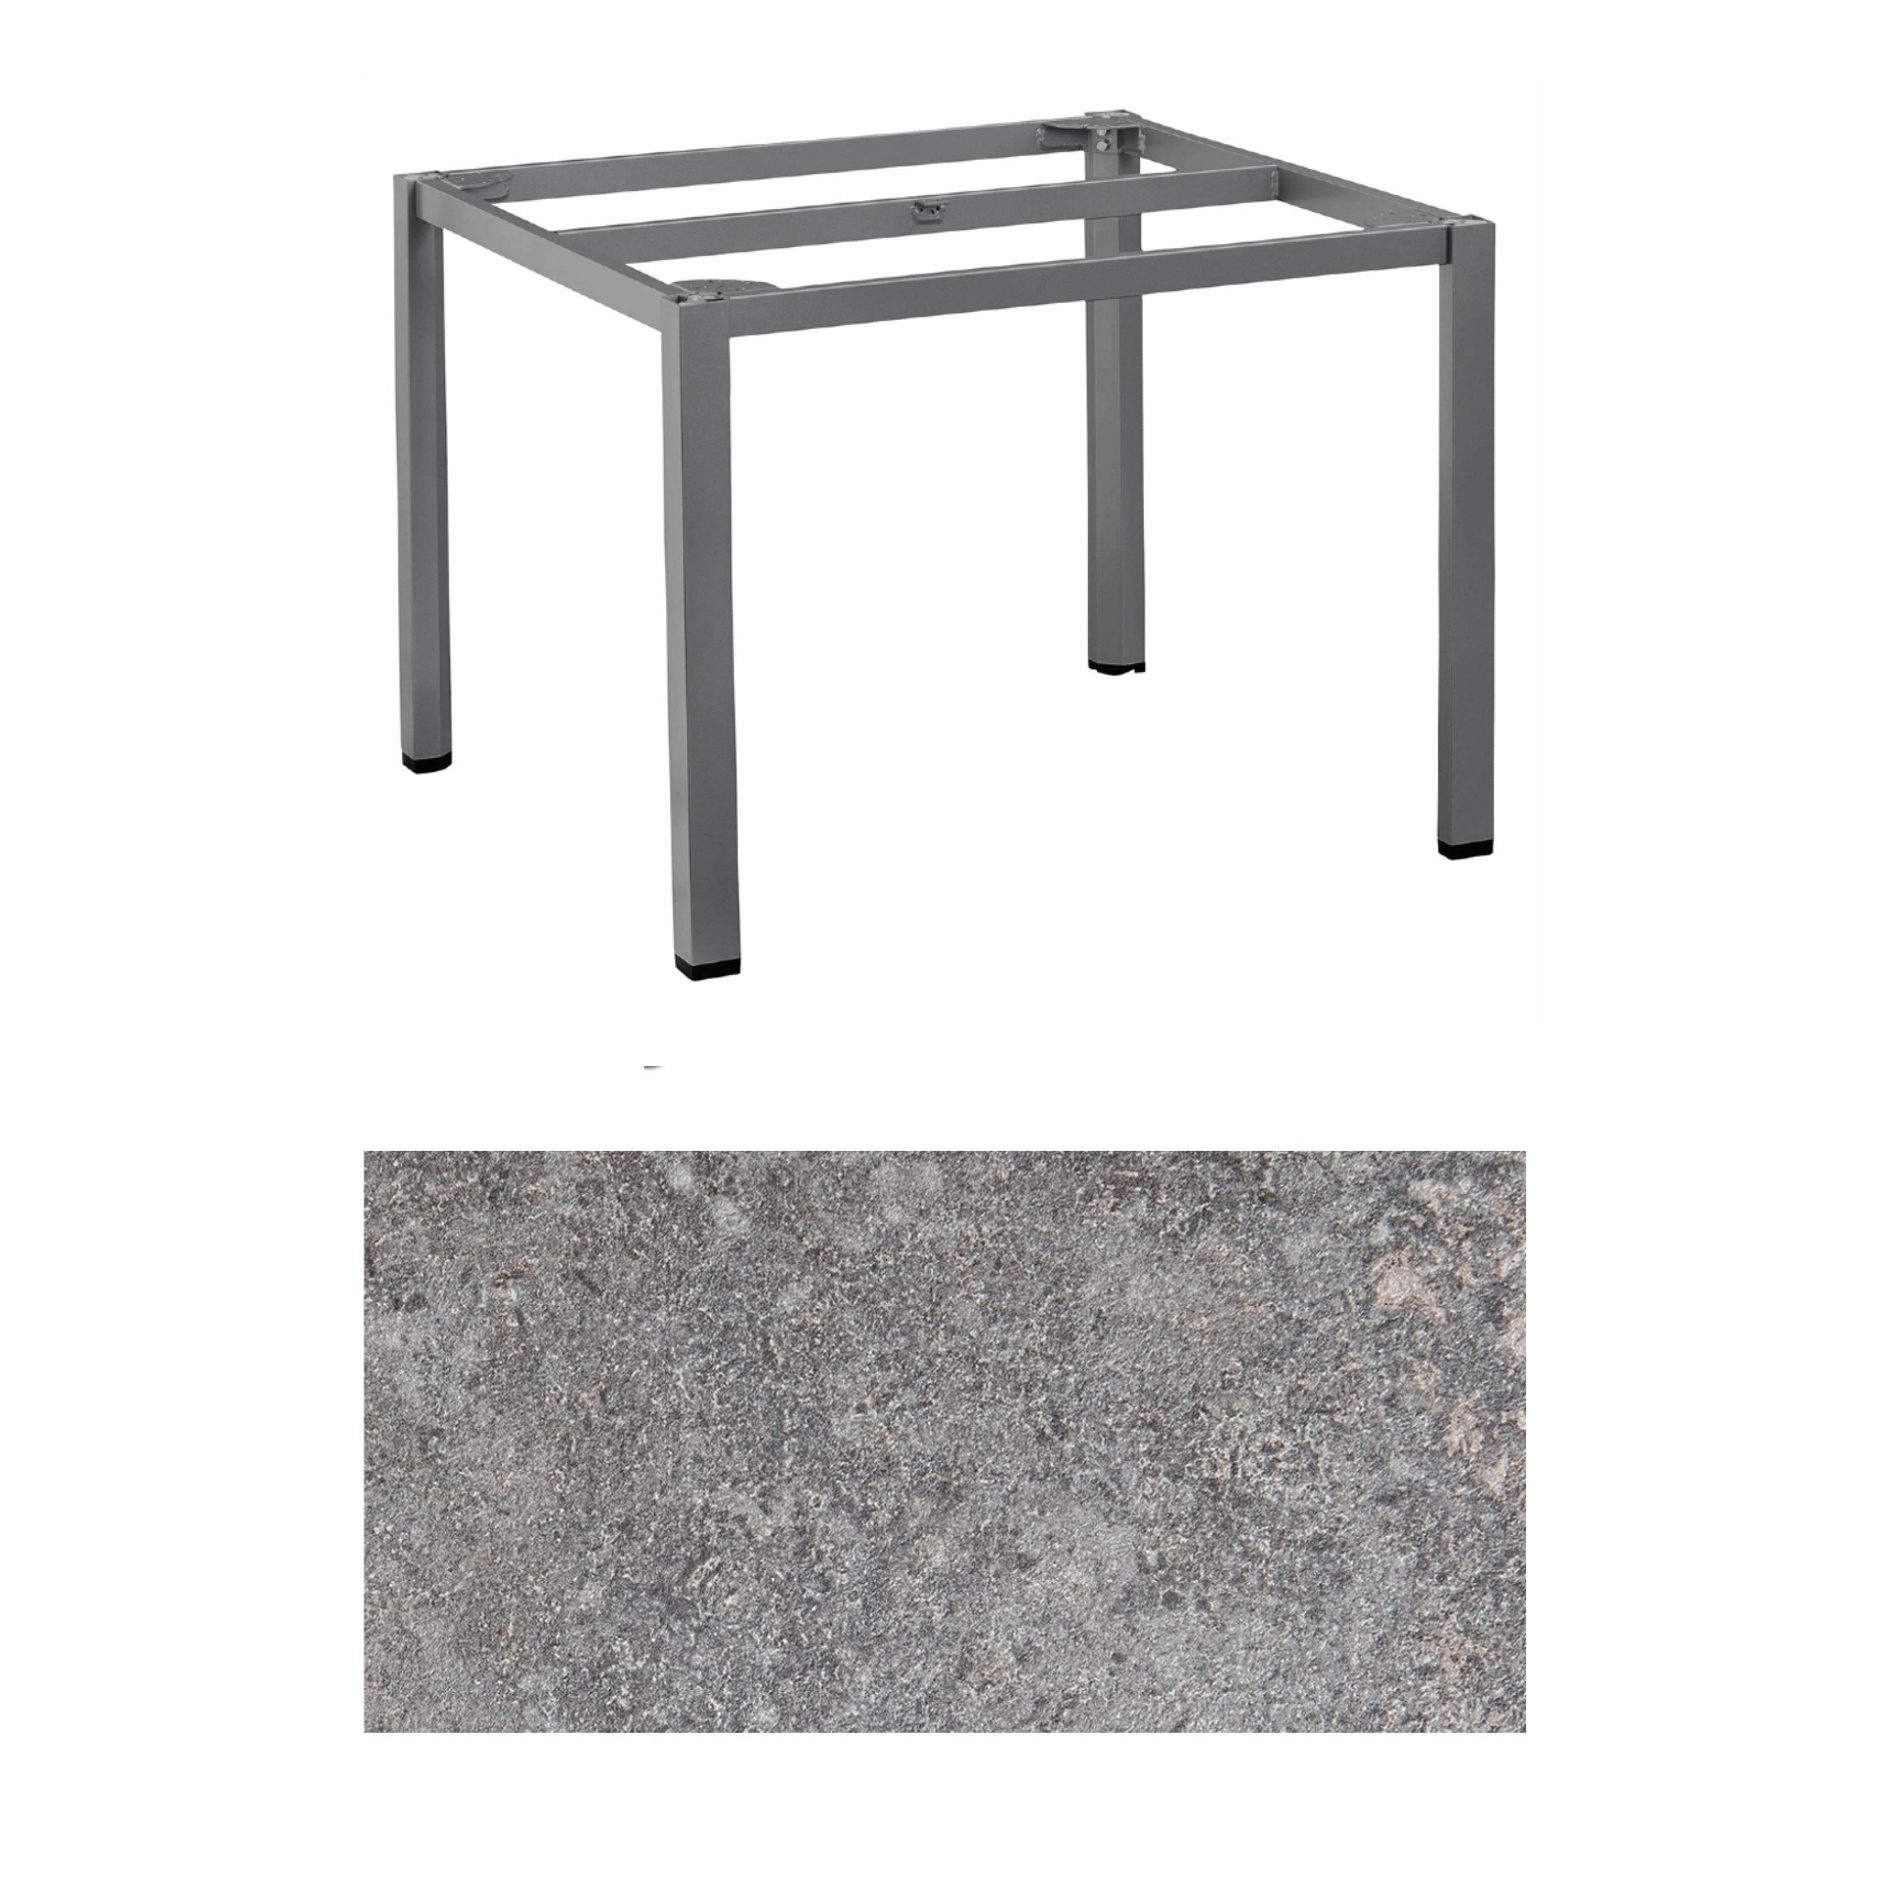 Kettler "Cubic" Tischgestell 95x95 cm, Aluminium anthrazit mit HPL-Platte Kalksandstein